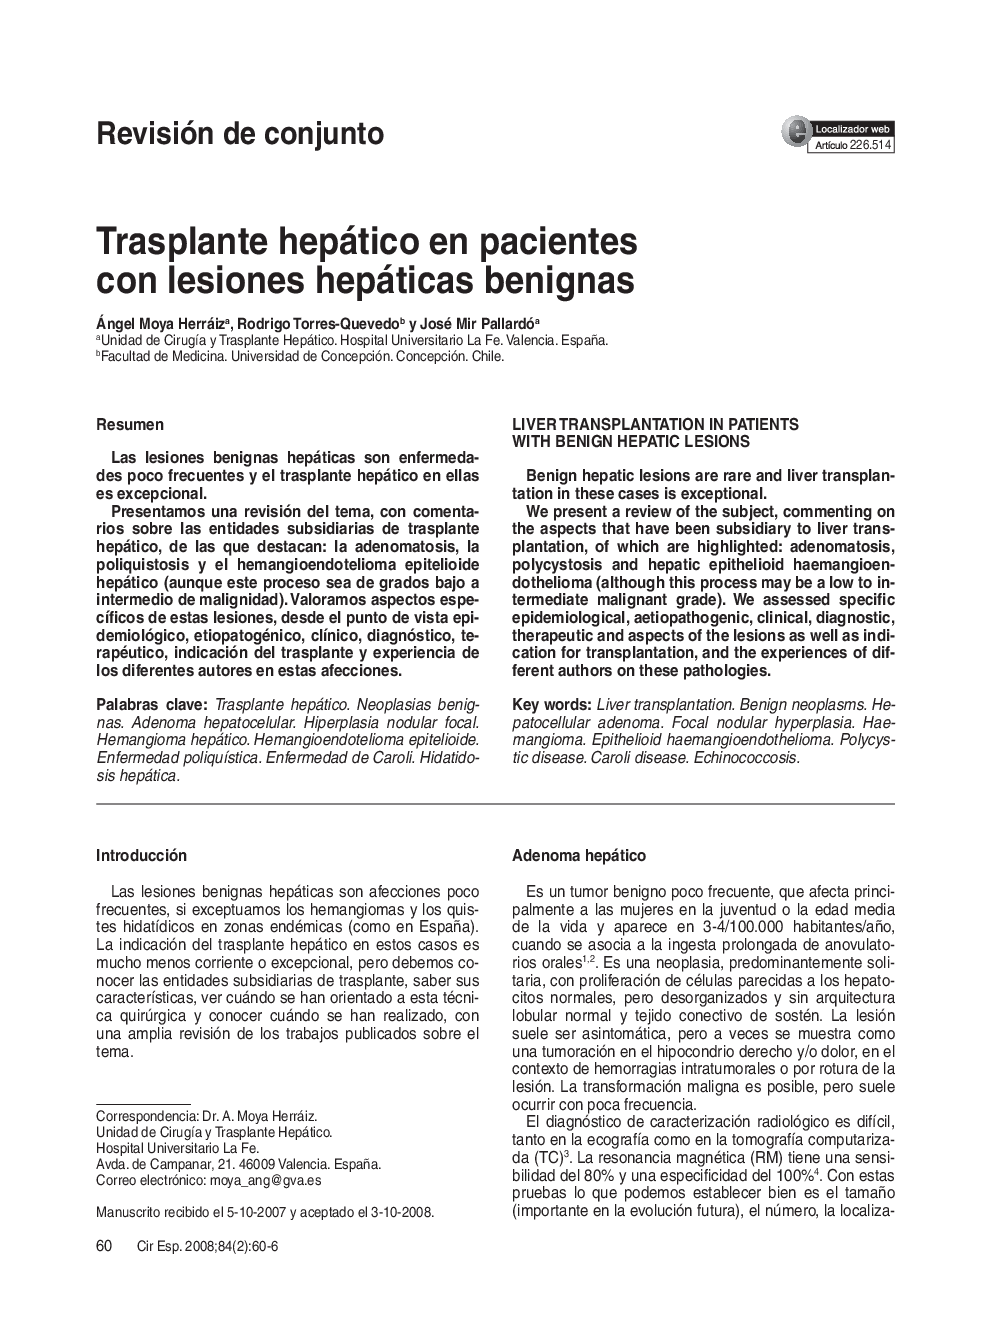 Trasplante hepático en pacientes con lesiones hepáticas benignas